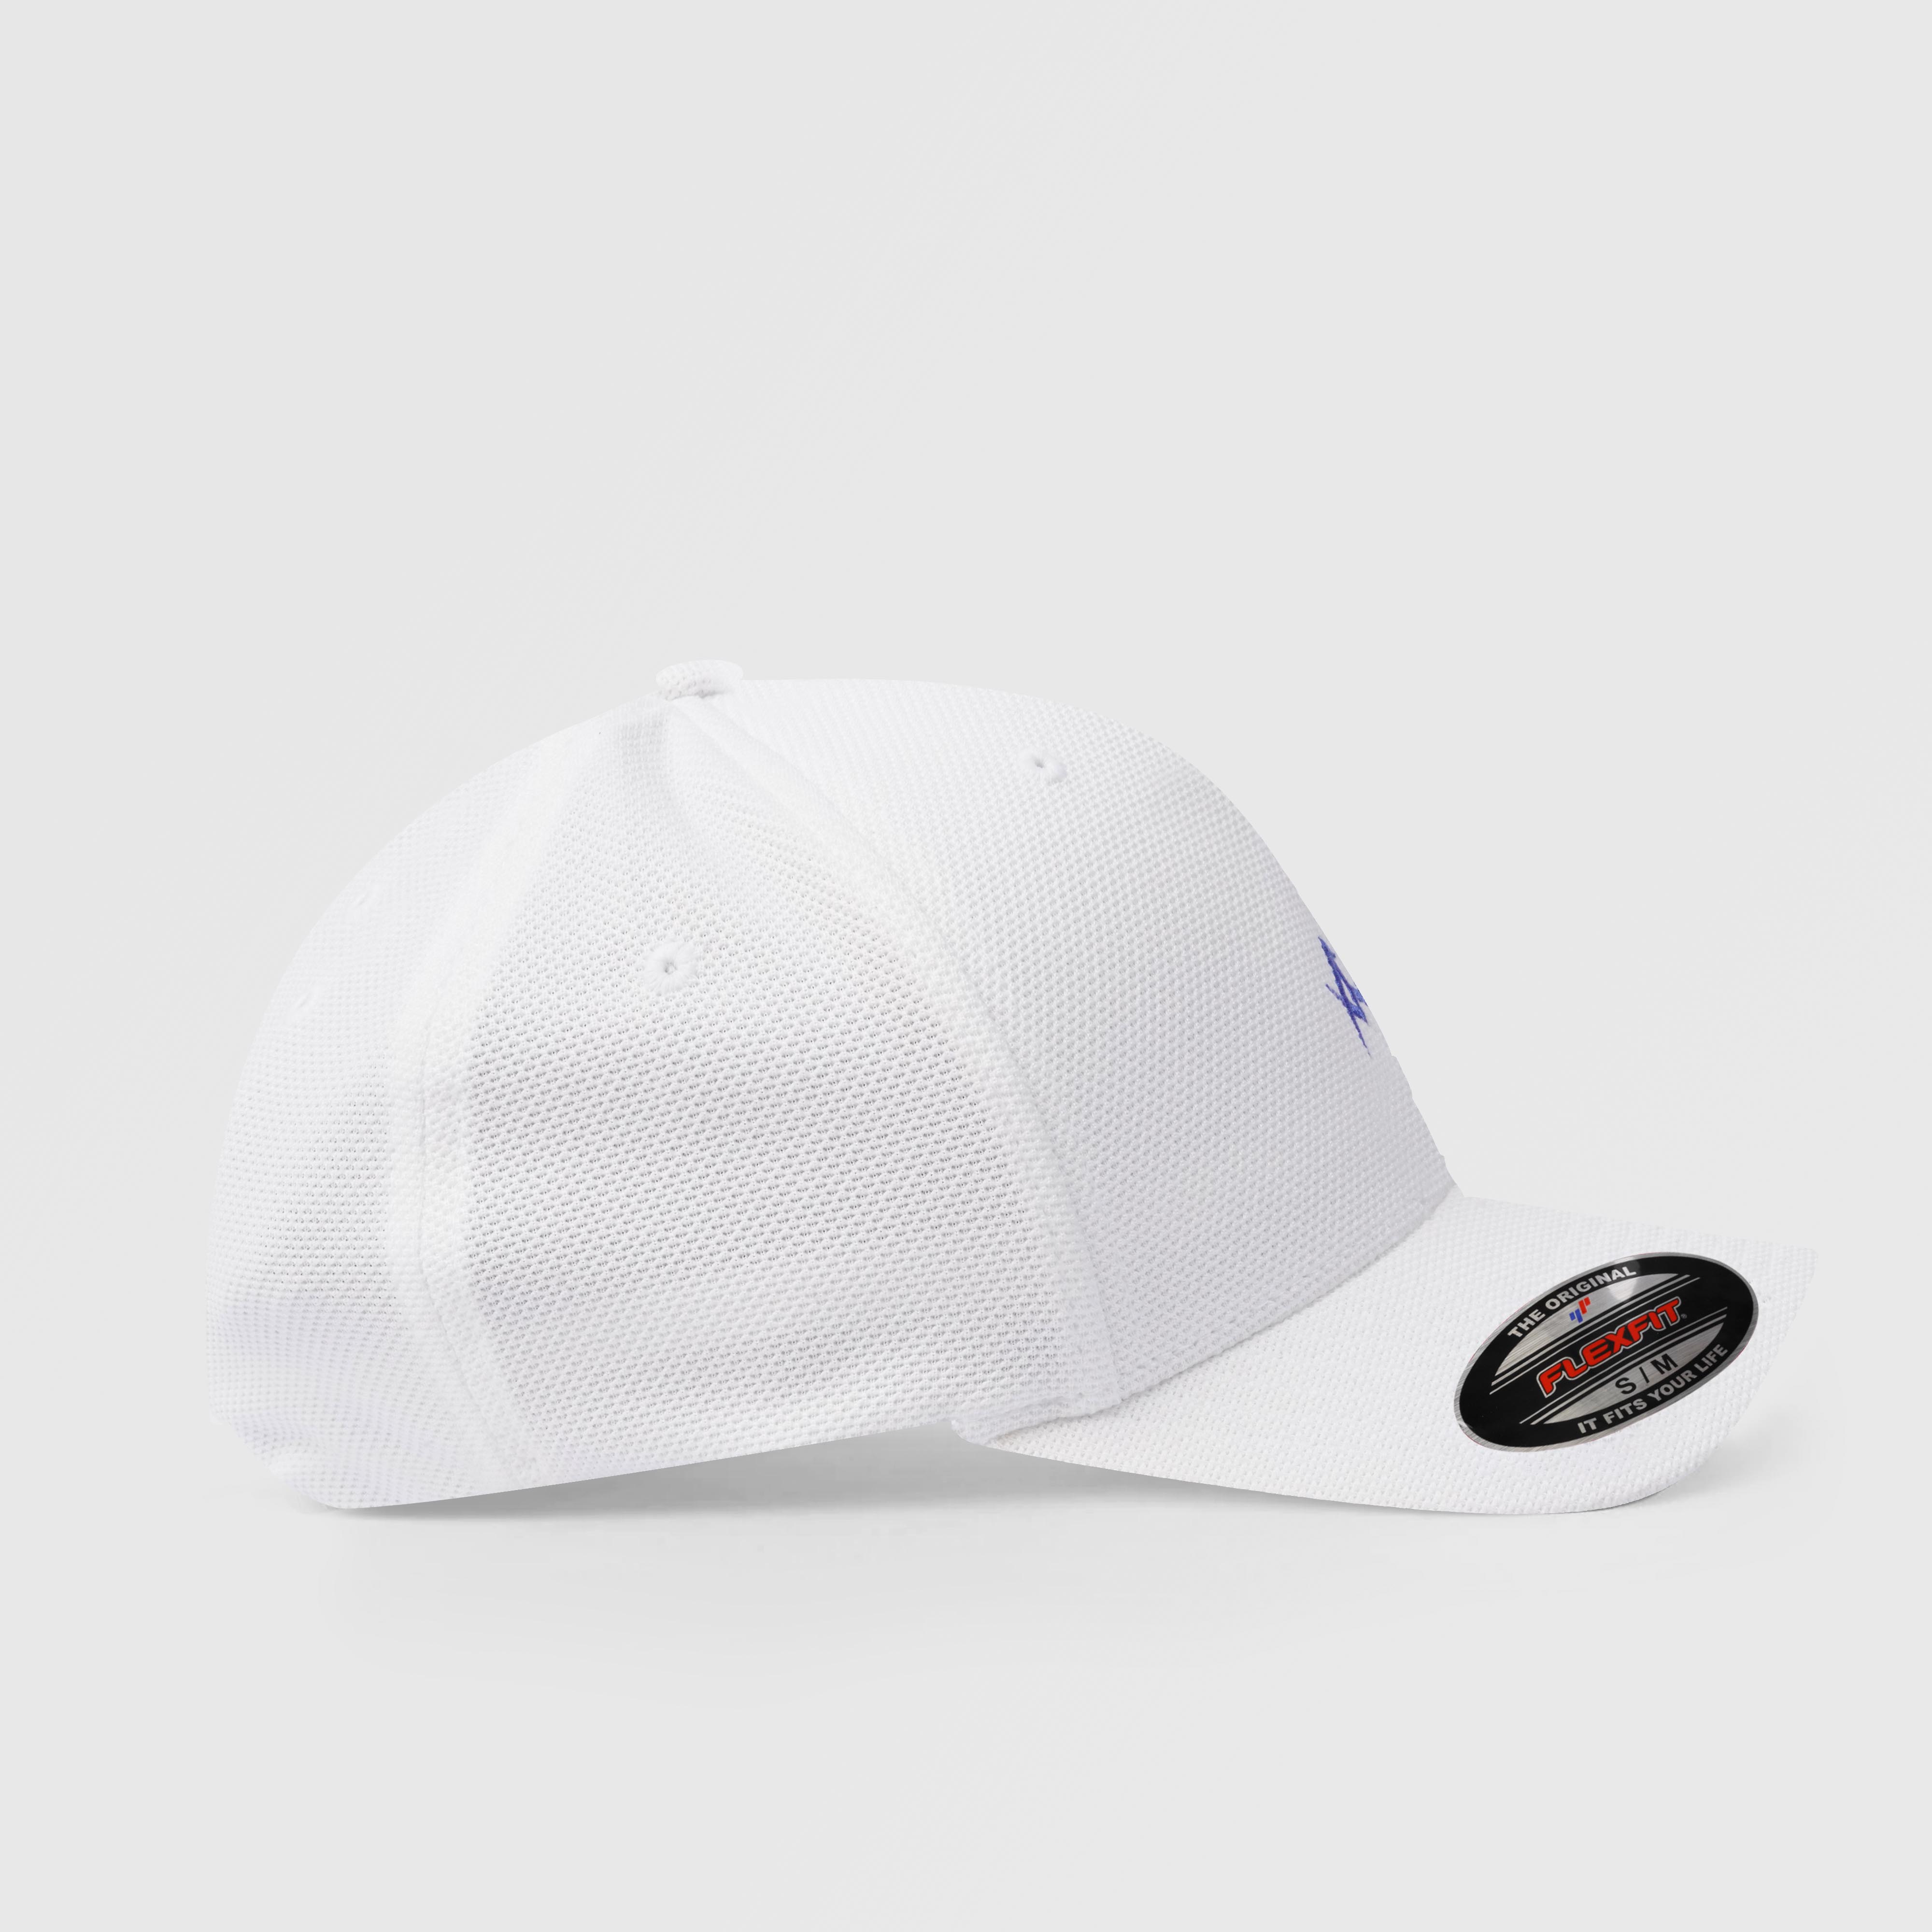 Pro Profile GA Cap (White)